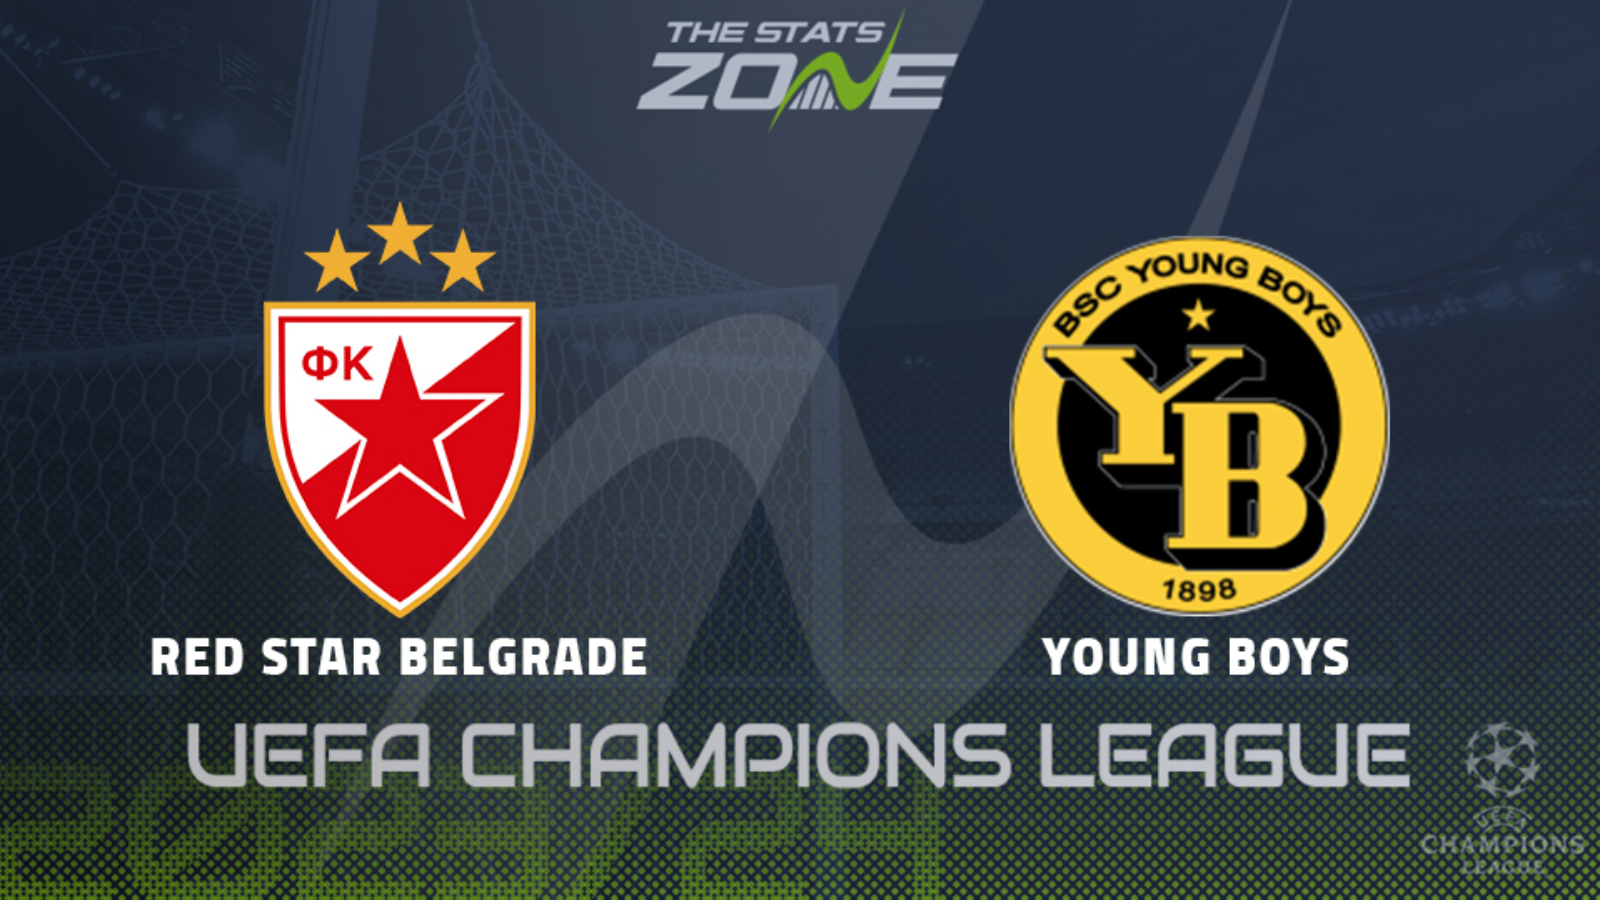 Crvena zvezda, UEFA Youth League